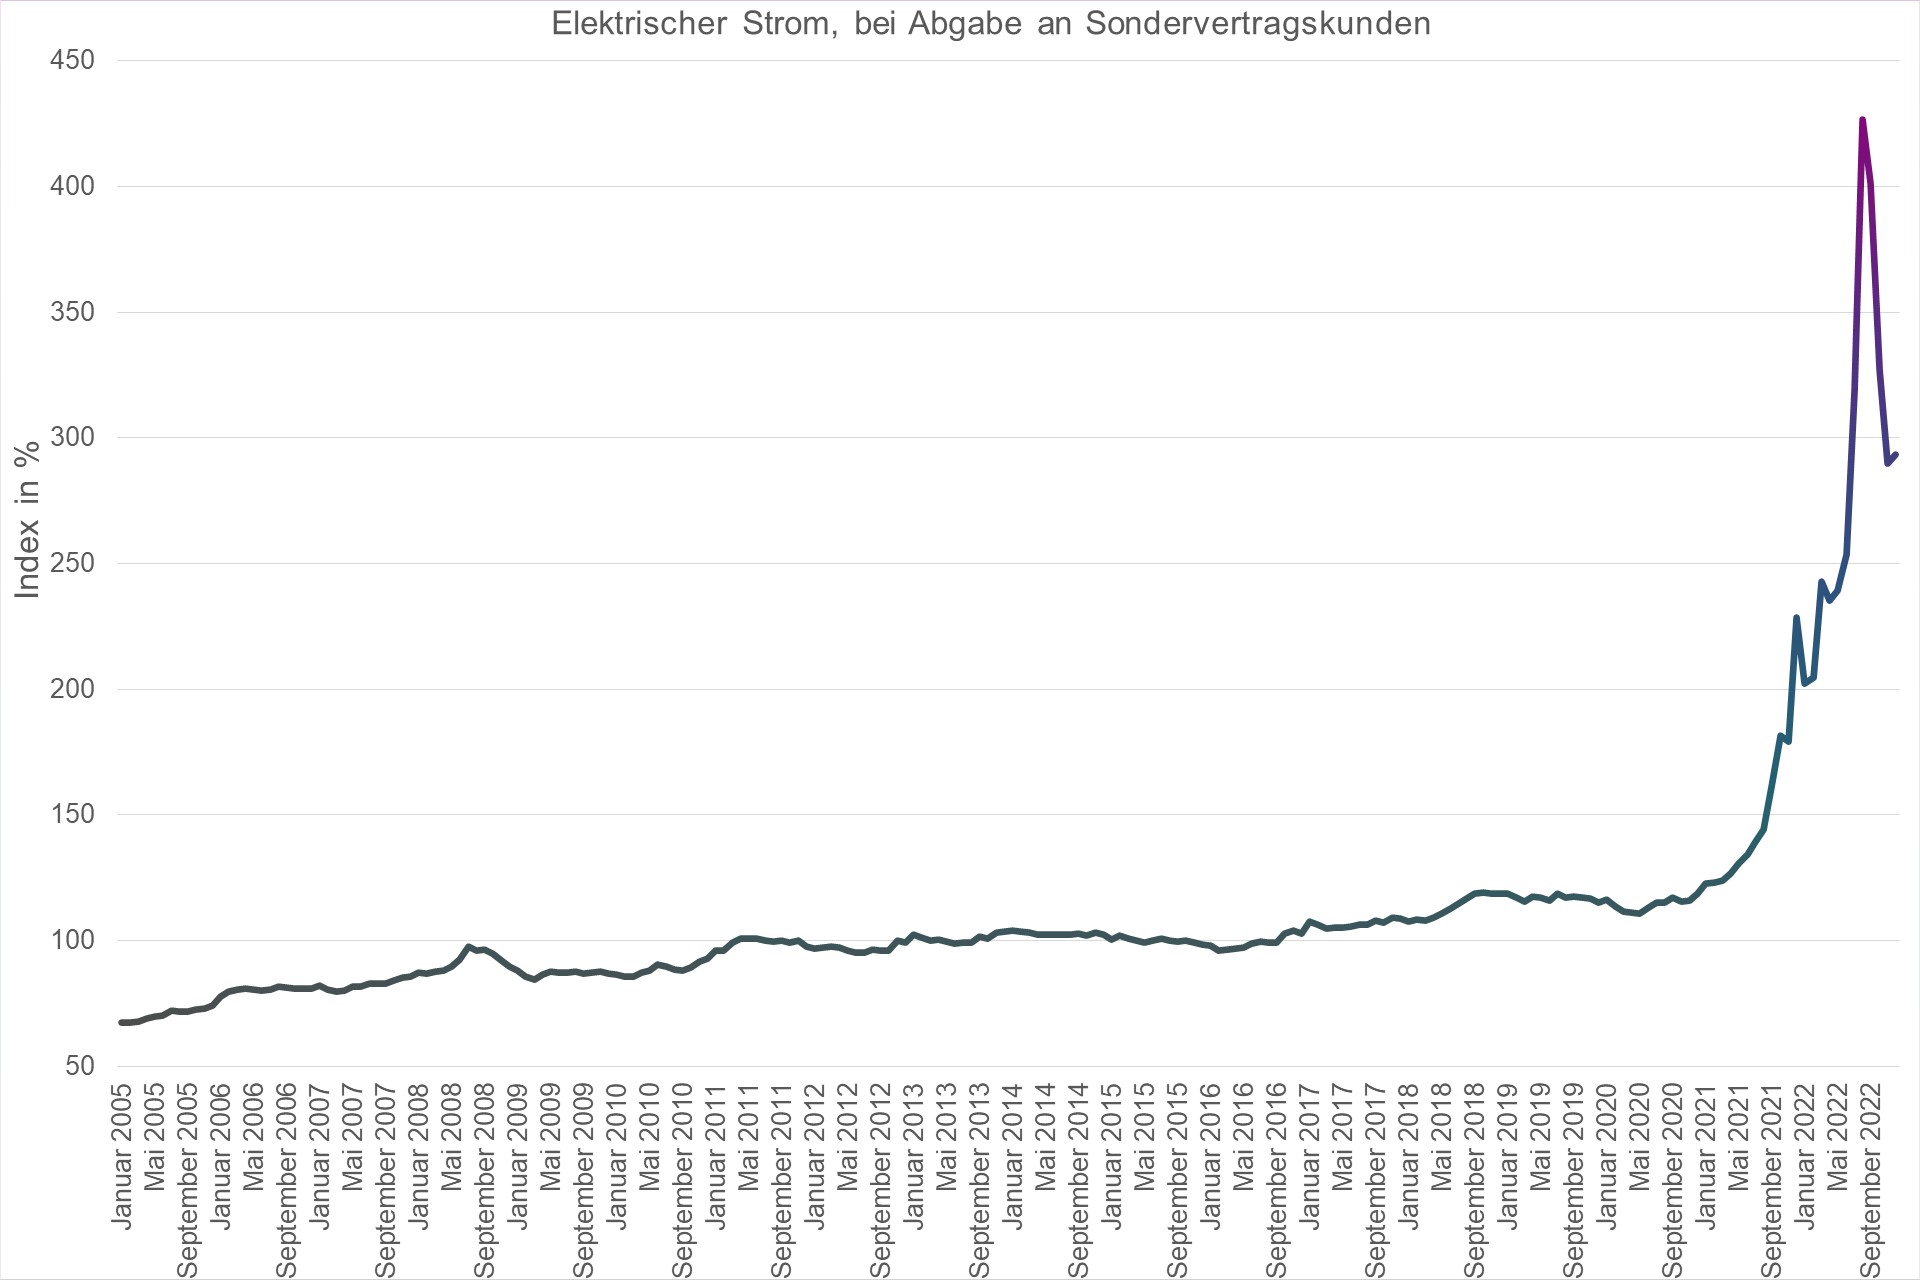 Grafik Preisindex Elektrischer Strom, bei Abgabe an Sondervertragskunden